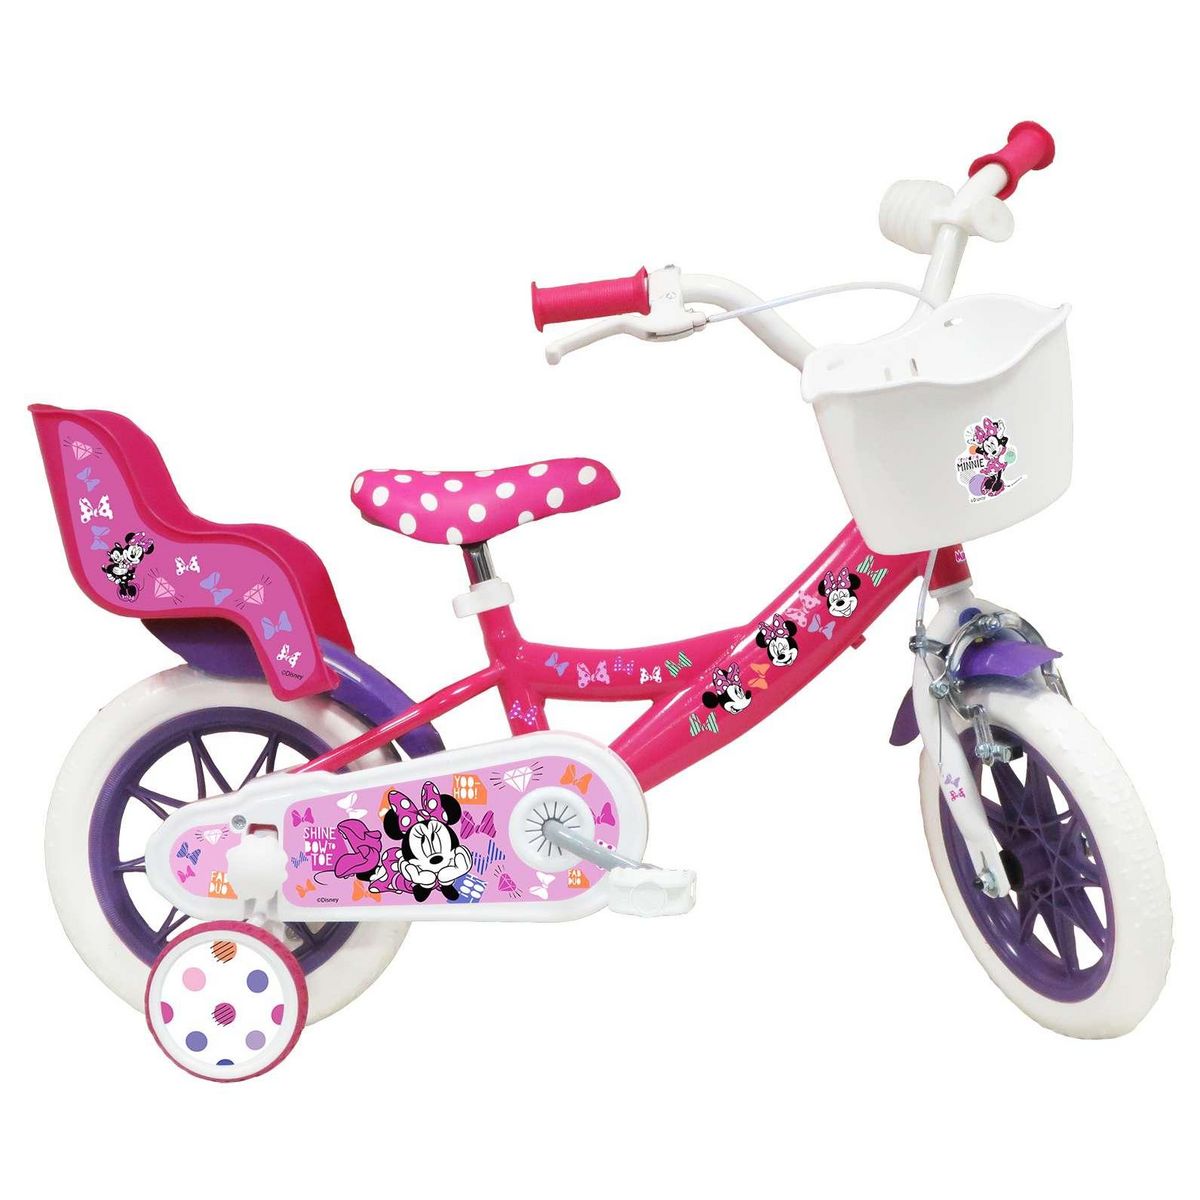 Disney Minnie Vélo 12 Fille Licence Minnie pour enfant de 3 à 5